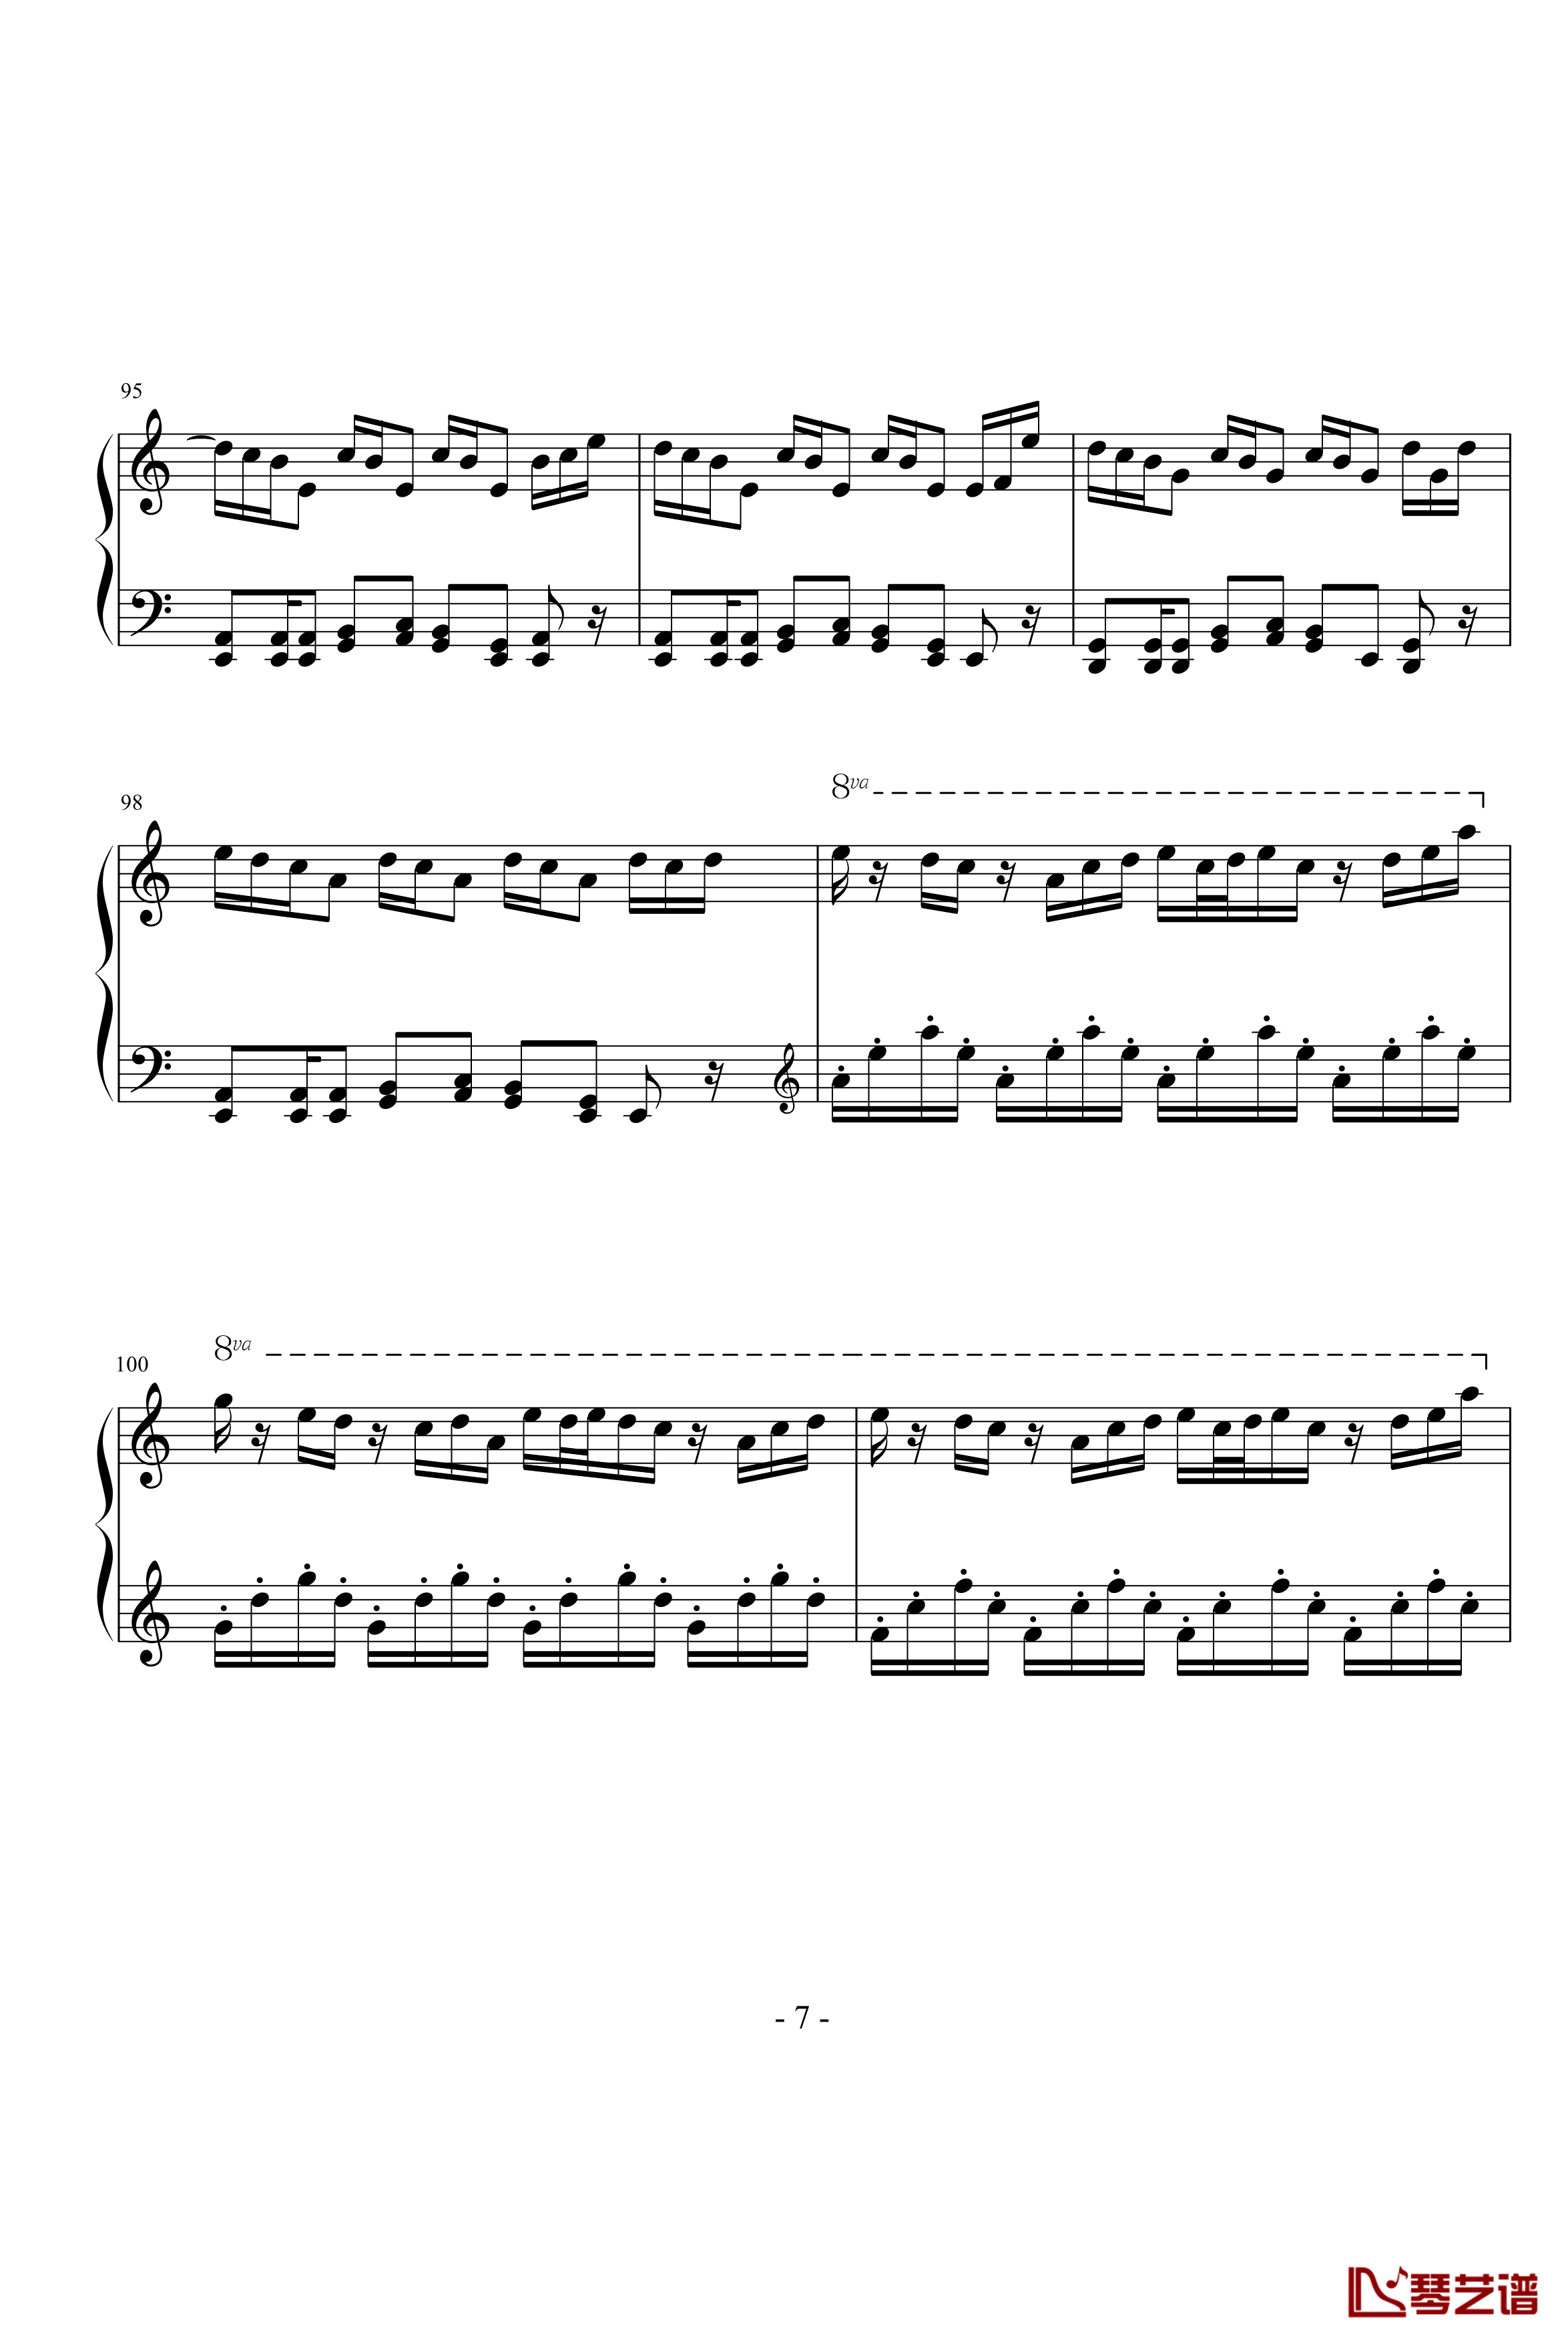 雪剑钢琴曲Op12钢琴谱-落花吹雪剑7